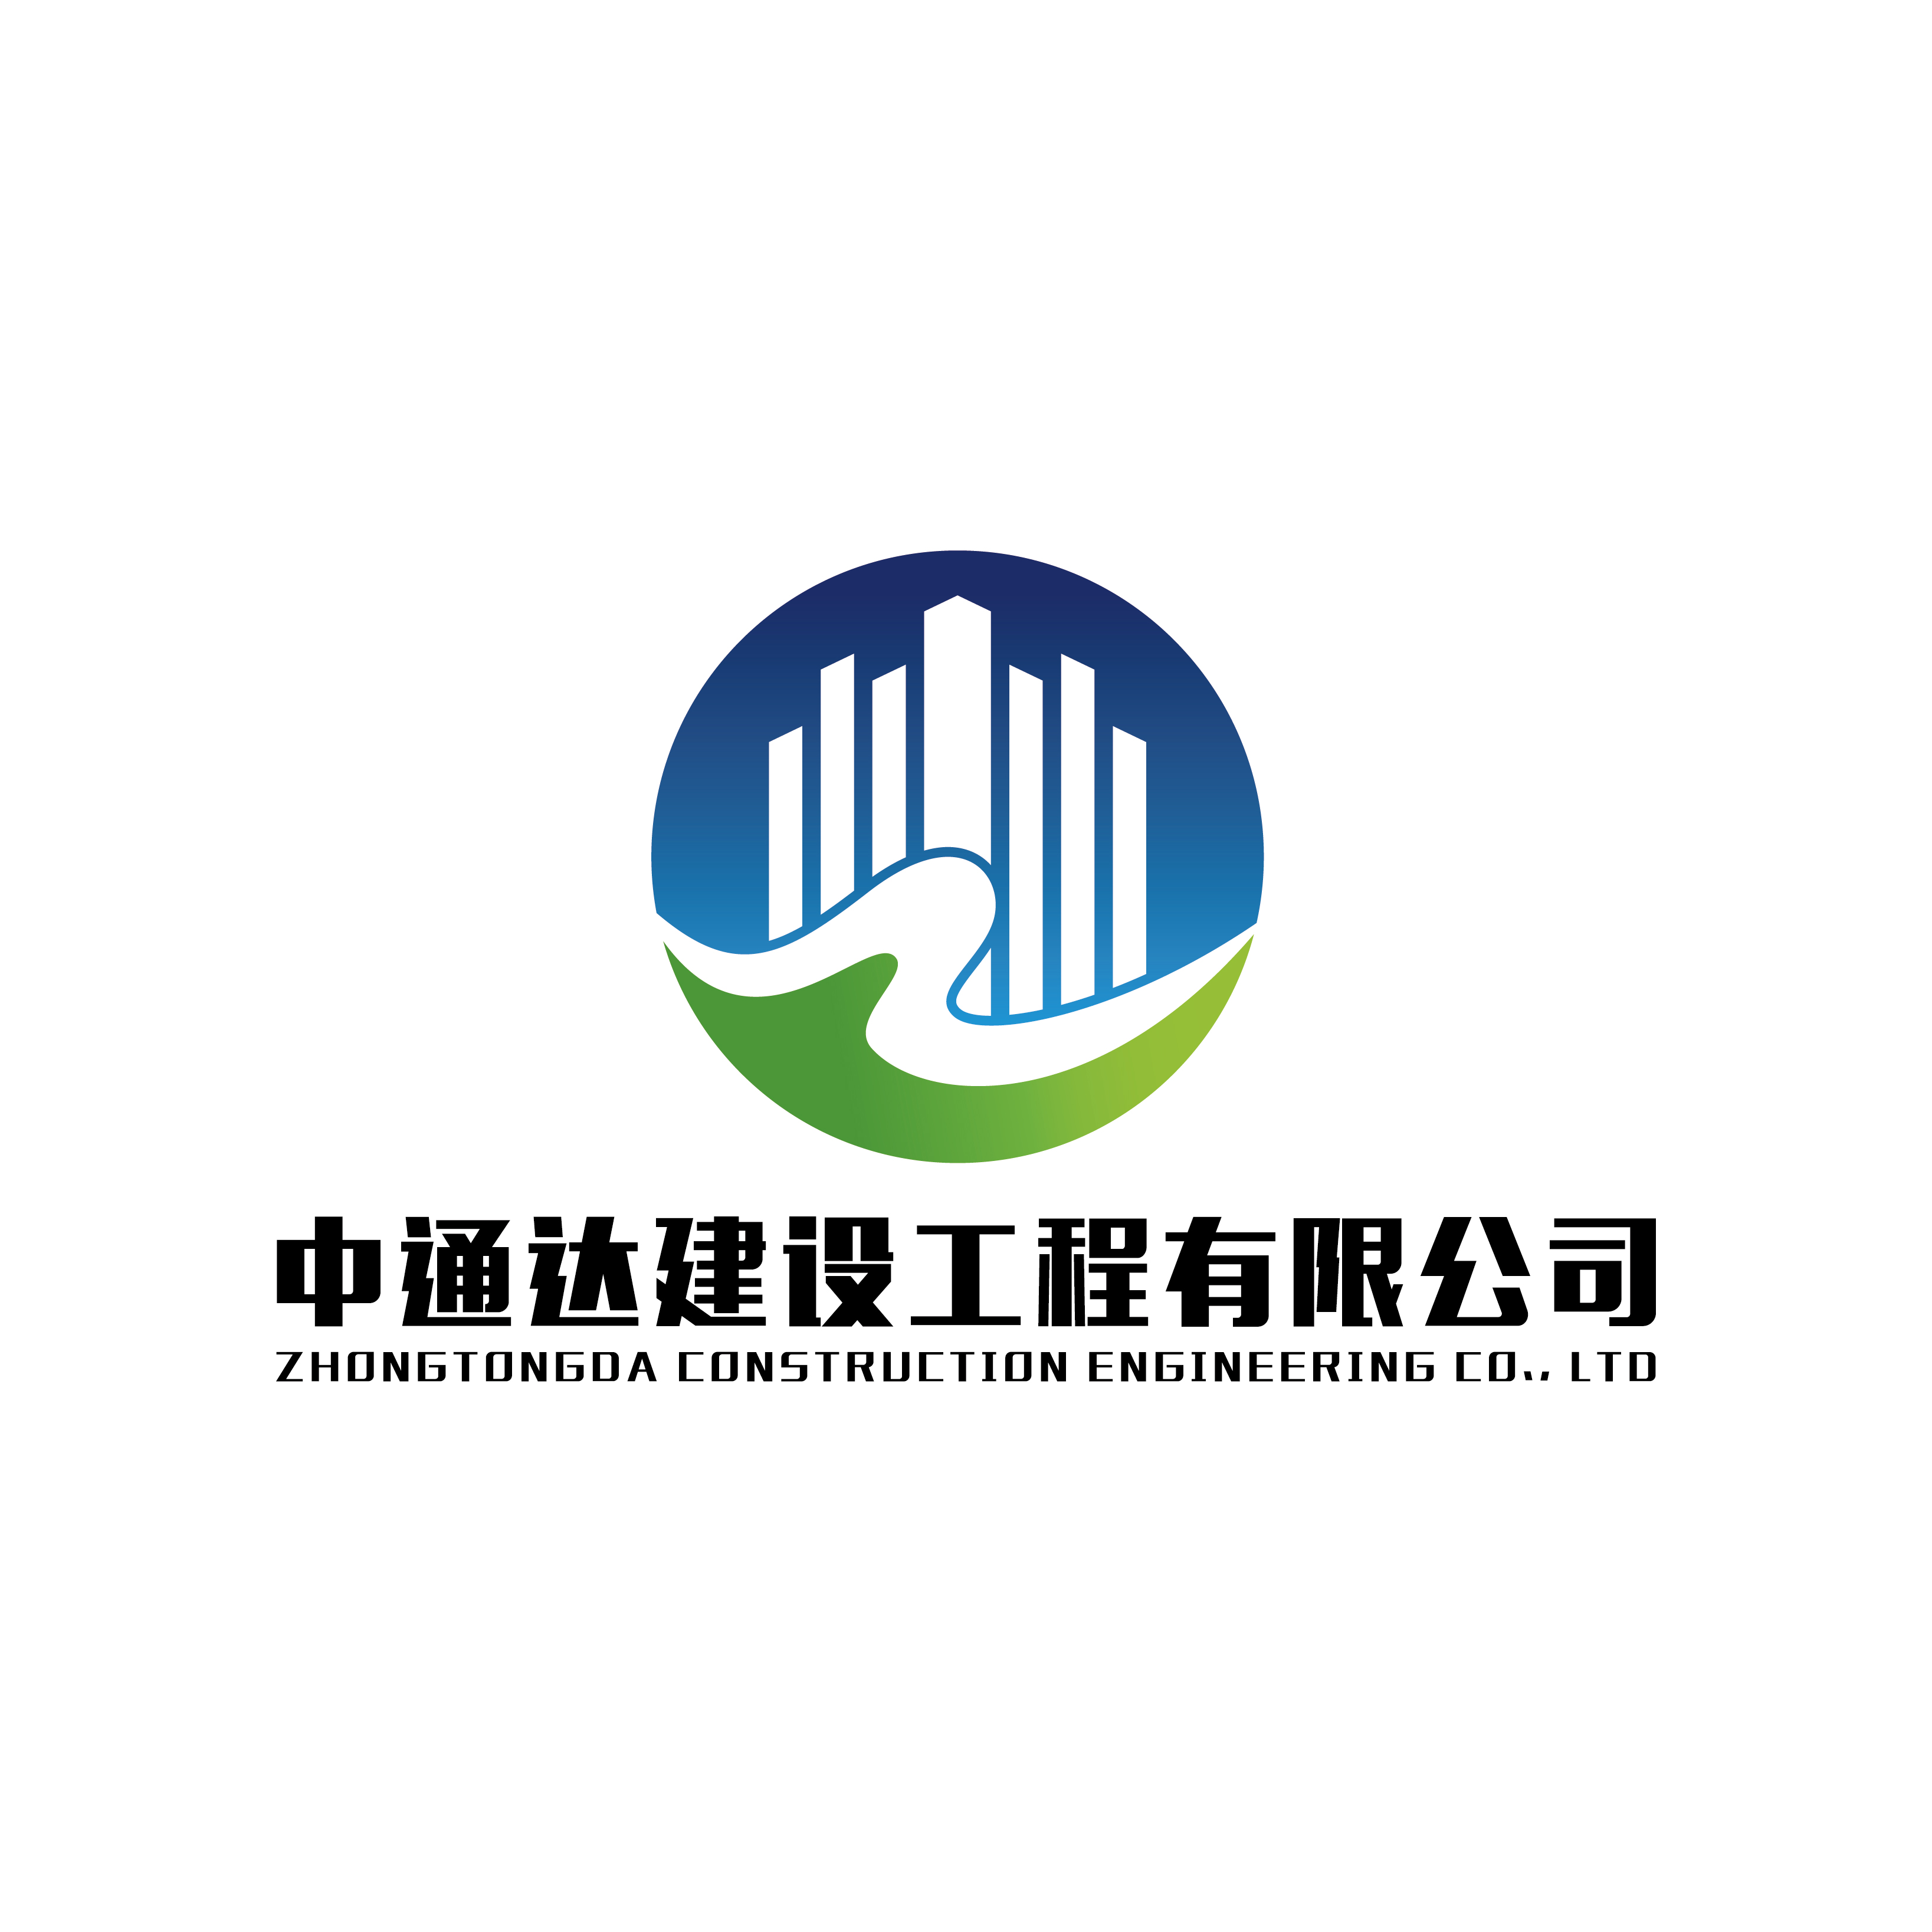 贵州中通达建设工程有限公司江苏分公司